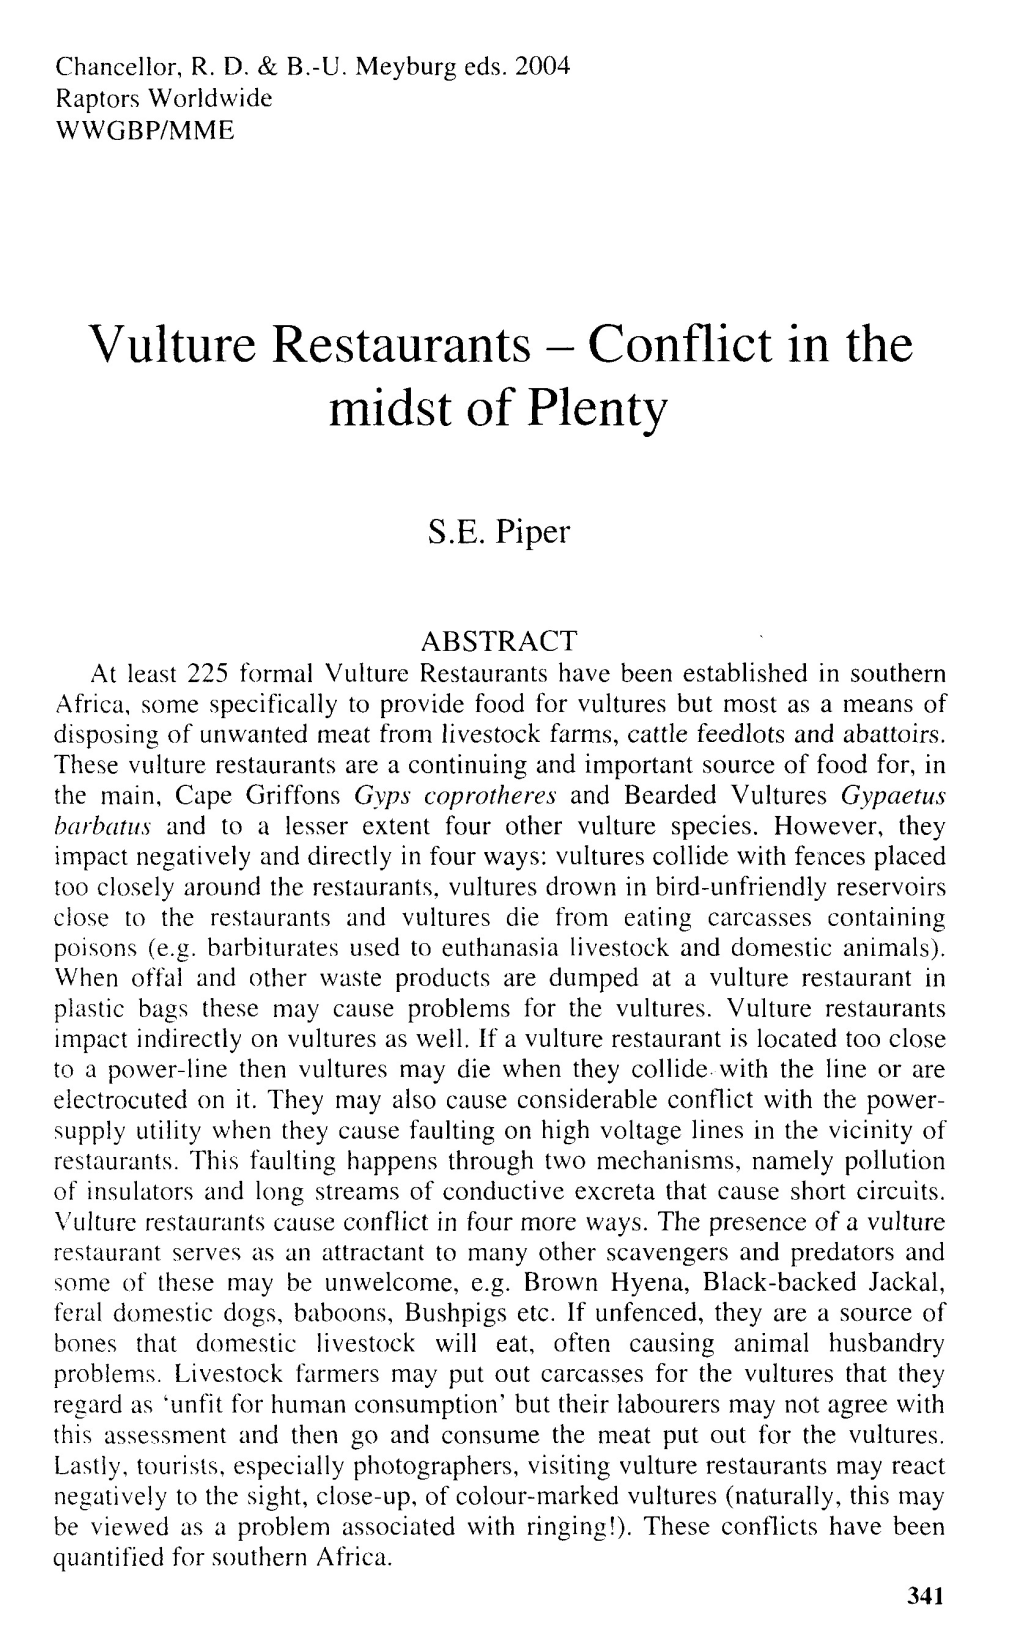 Vulture Restaurants - Conflict in the Midst of Plenty